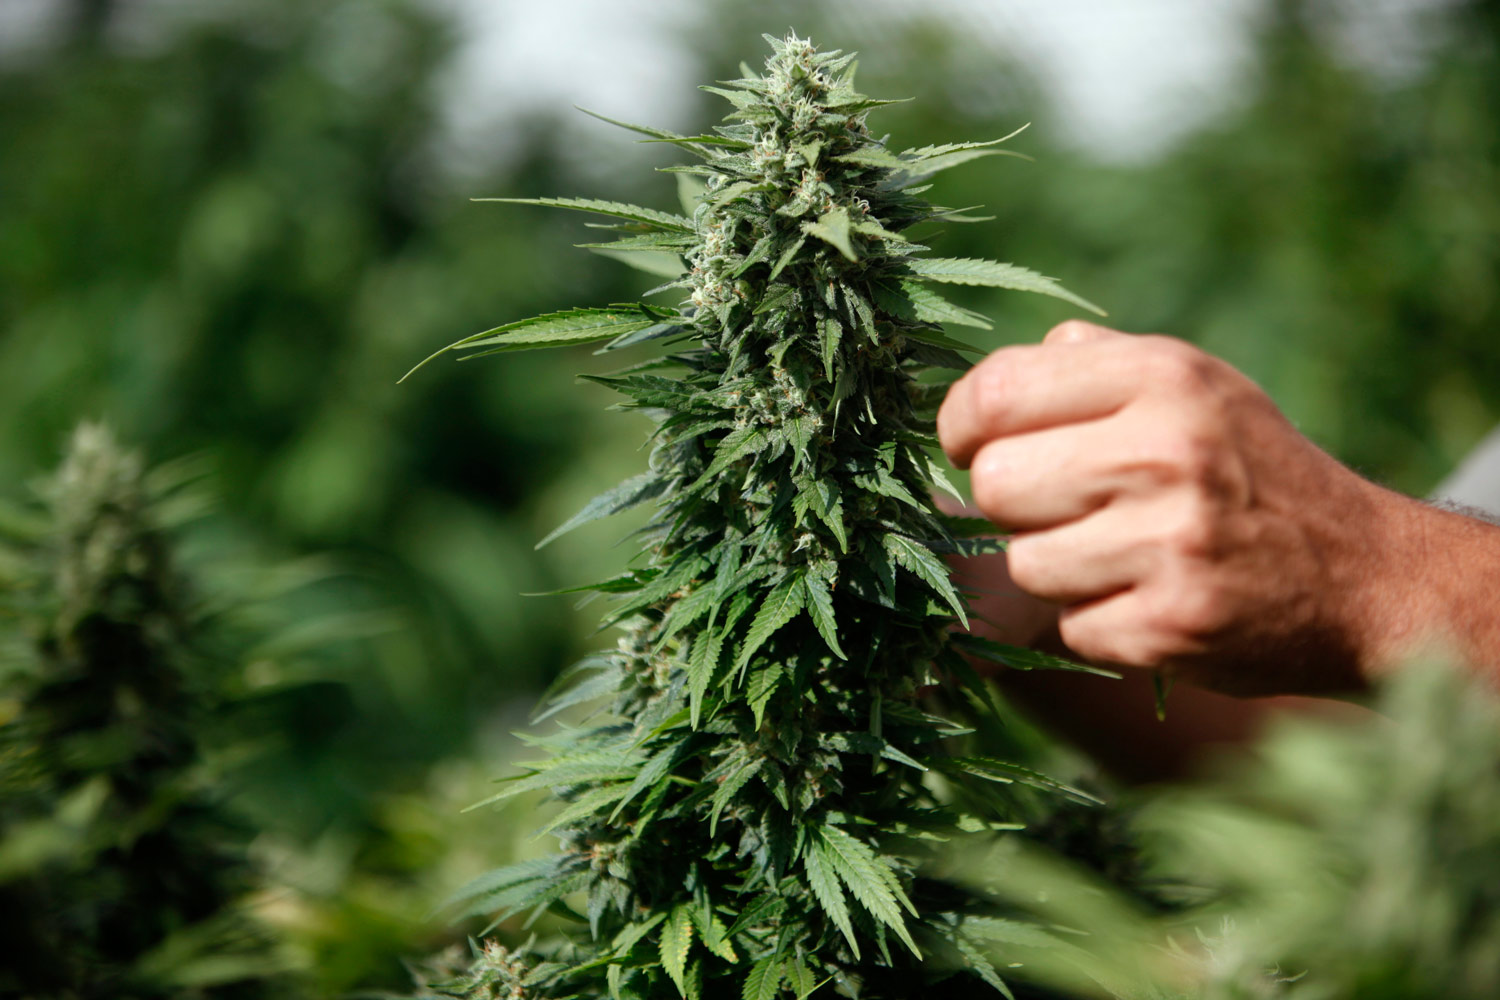  Nola, sorpreso a coltivare 6 piante di marijuana: arrestato 21enne